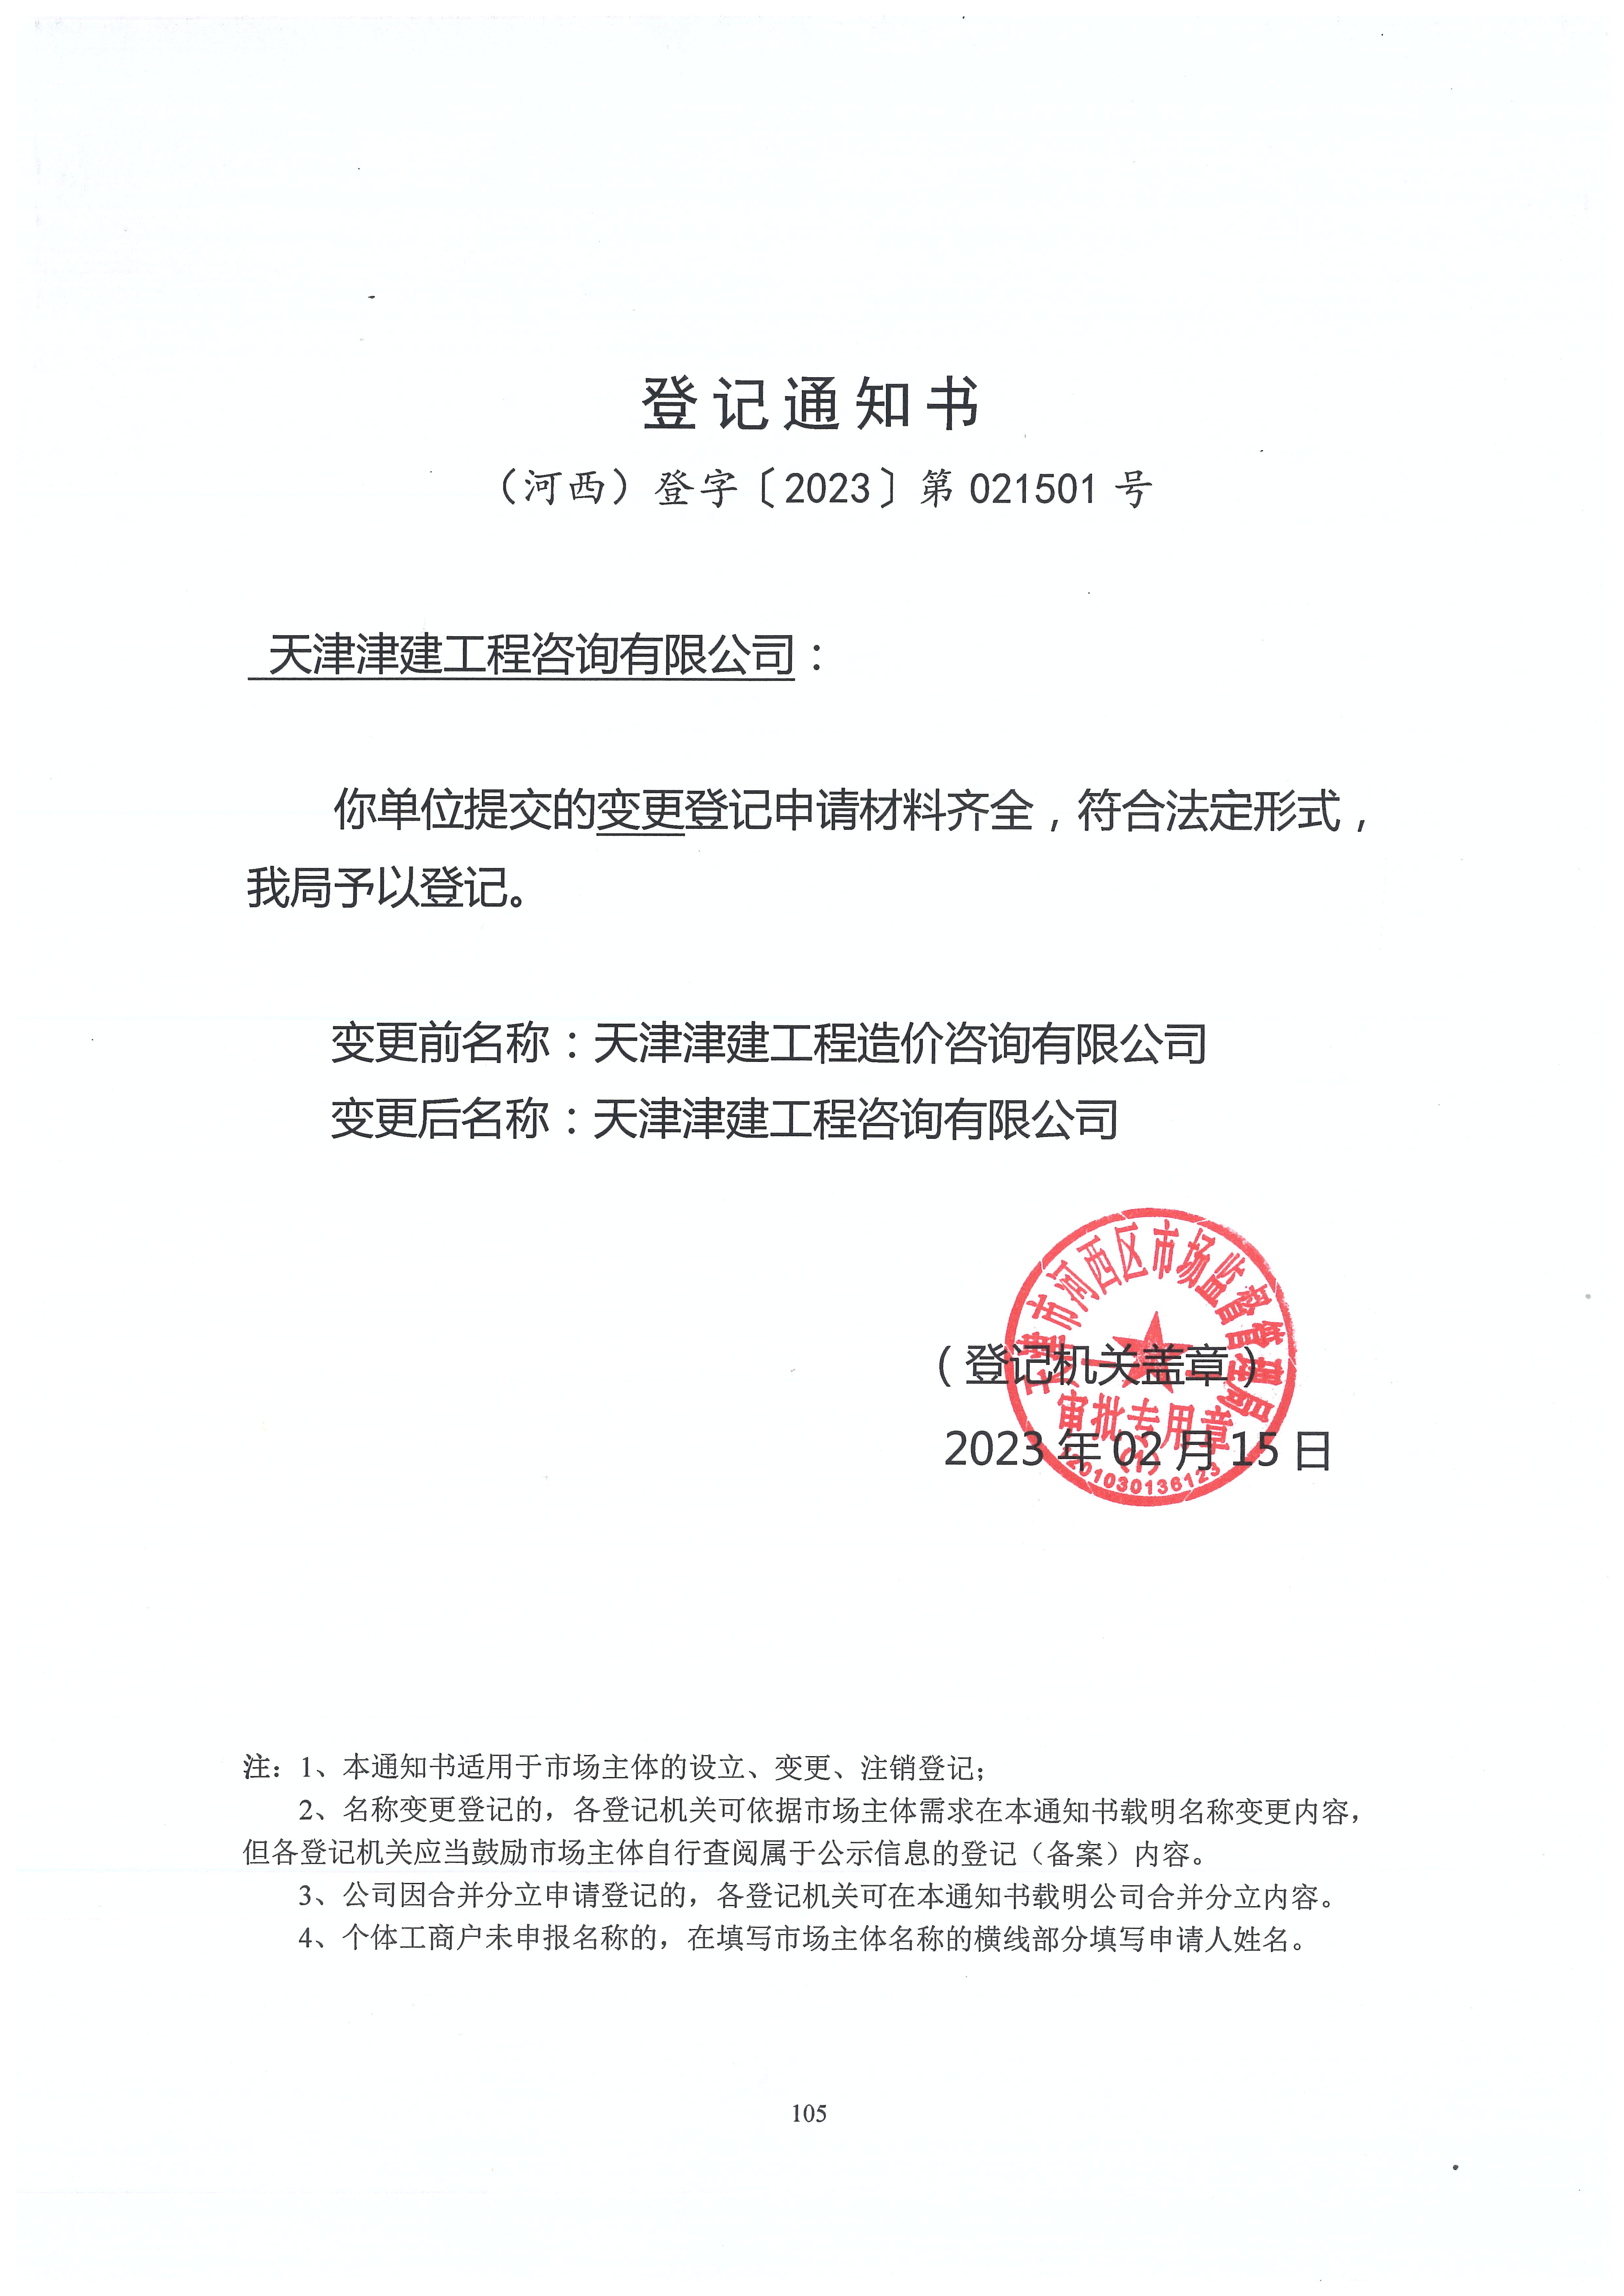 公告：天津津建工程造价咨询有限公司已更名为天津津建工程咨询有限公司